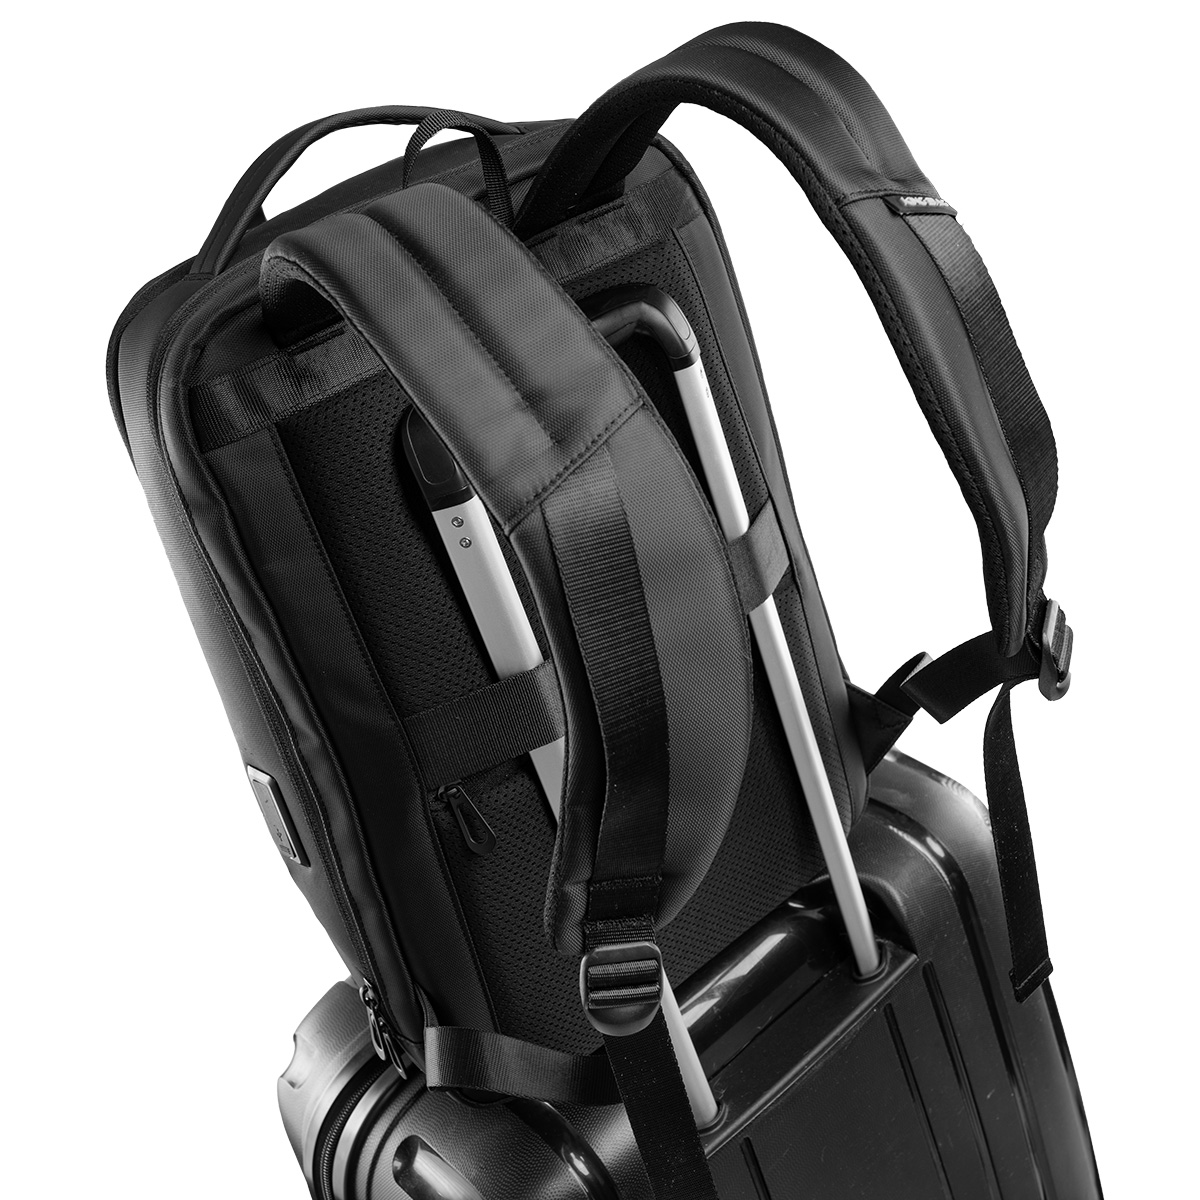 Balo laptop 15” KINGBAG APOLLO thời trang, tích hợp cổng USB đa dụng, ngăn phụ lót chống thấm, màu đen - Hàng chính hãng